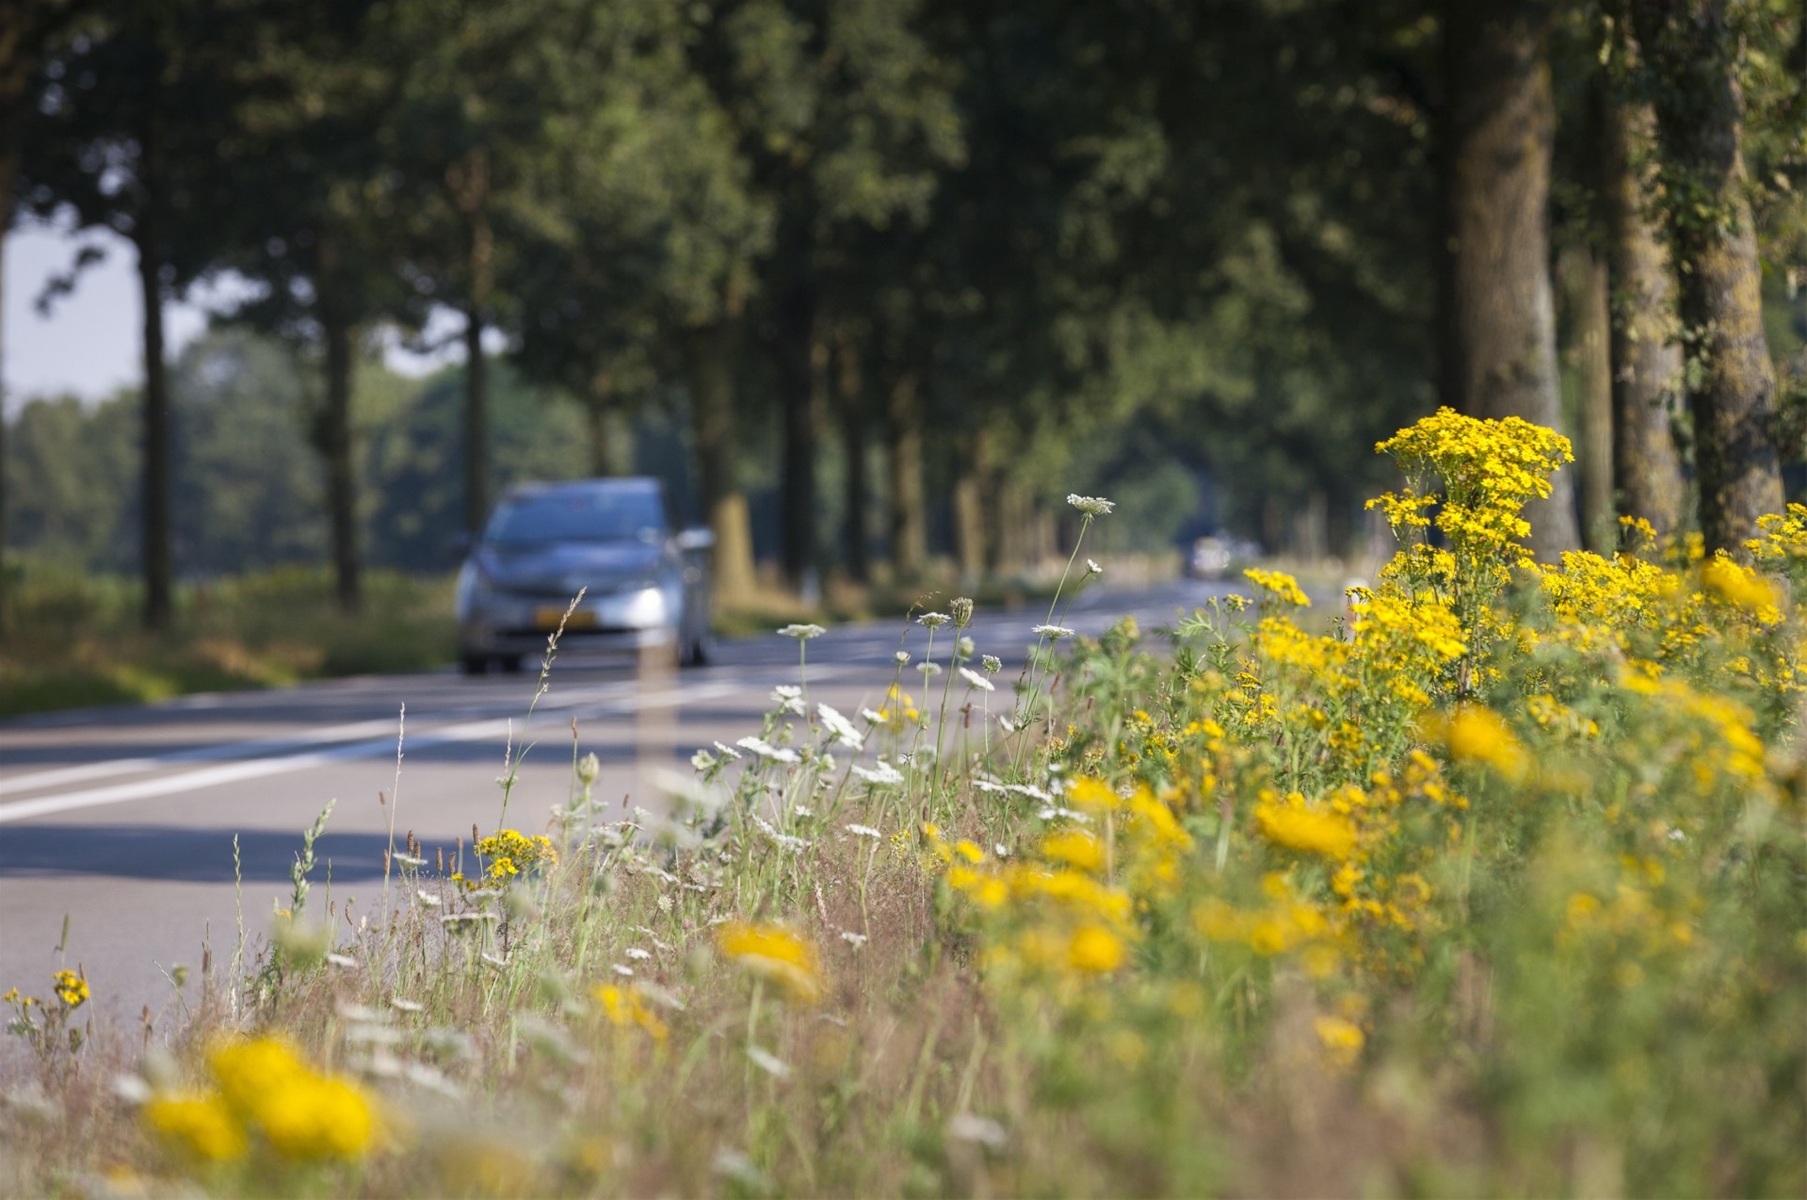 Bloemen in een berm langs de provinciale weg waar een auto overheen rijdt.